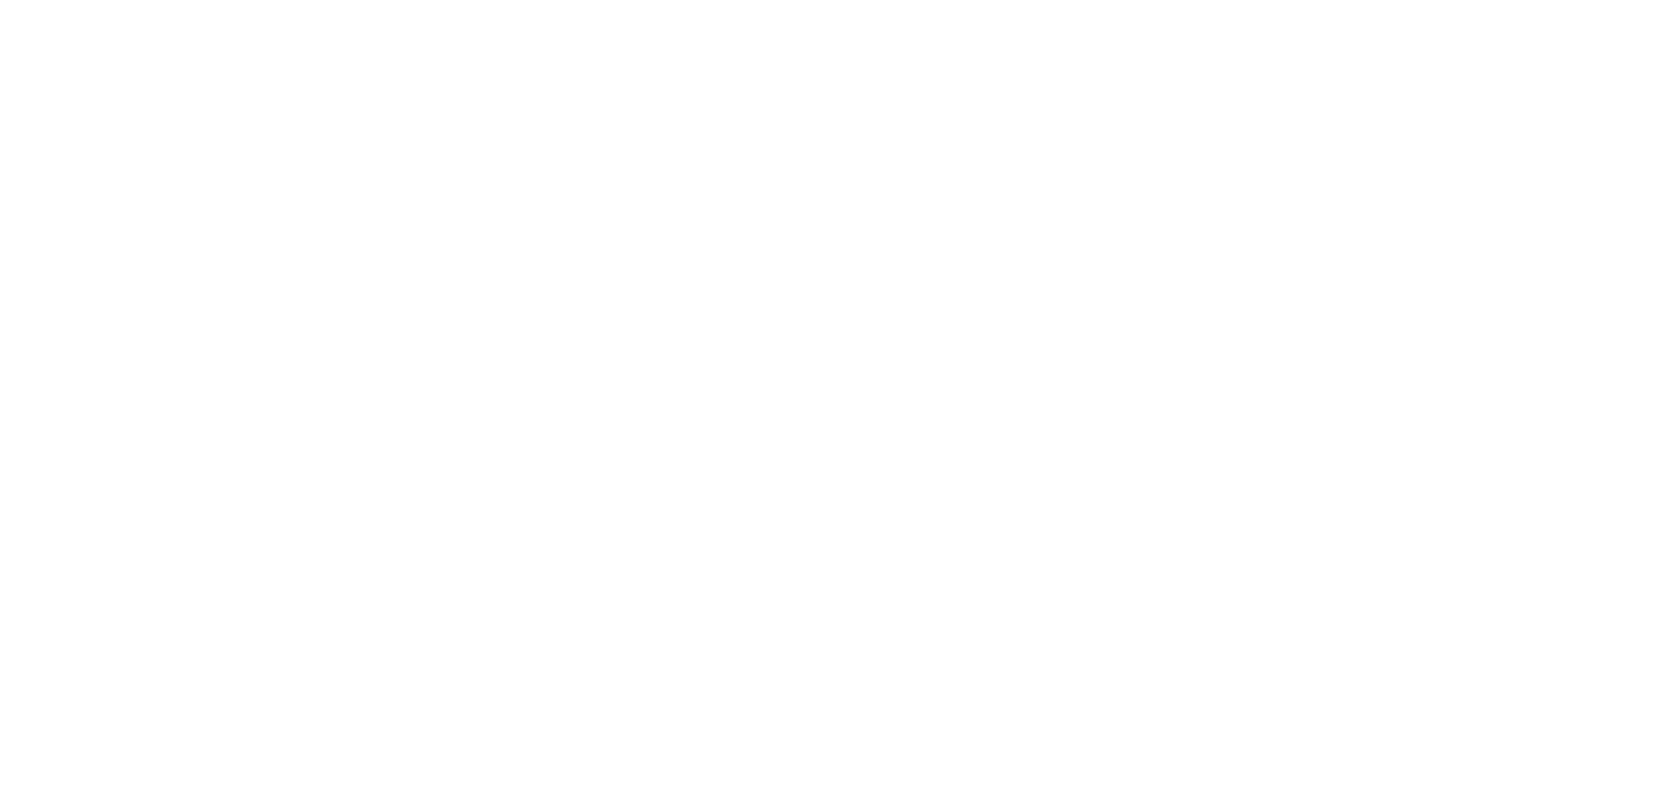 Фудтрак joyful 82, Катя Шпакова иллюстратор, фудтрак айдентика, фудтрак фирменный стиль, фудтрак логотип, логотип для кафе, логотип для ресторана, дизайн студия be art Пермь​